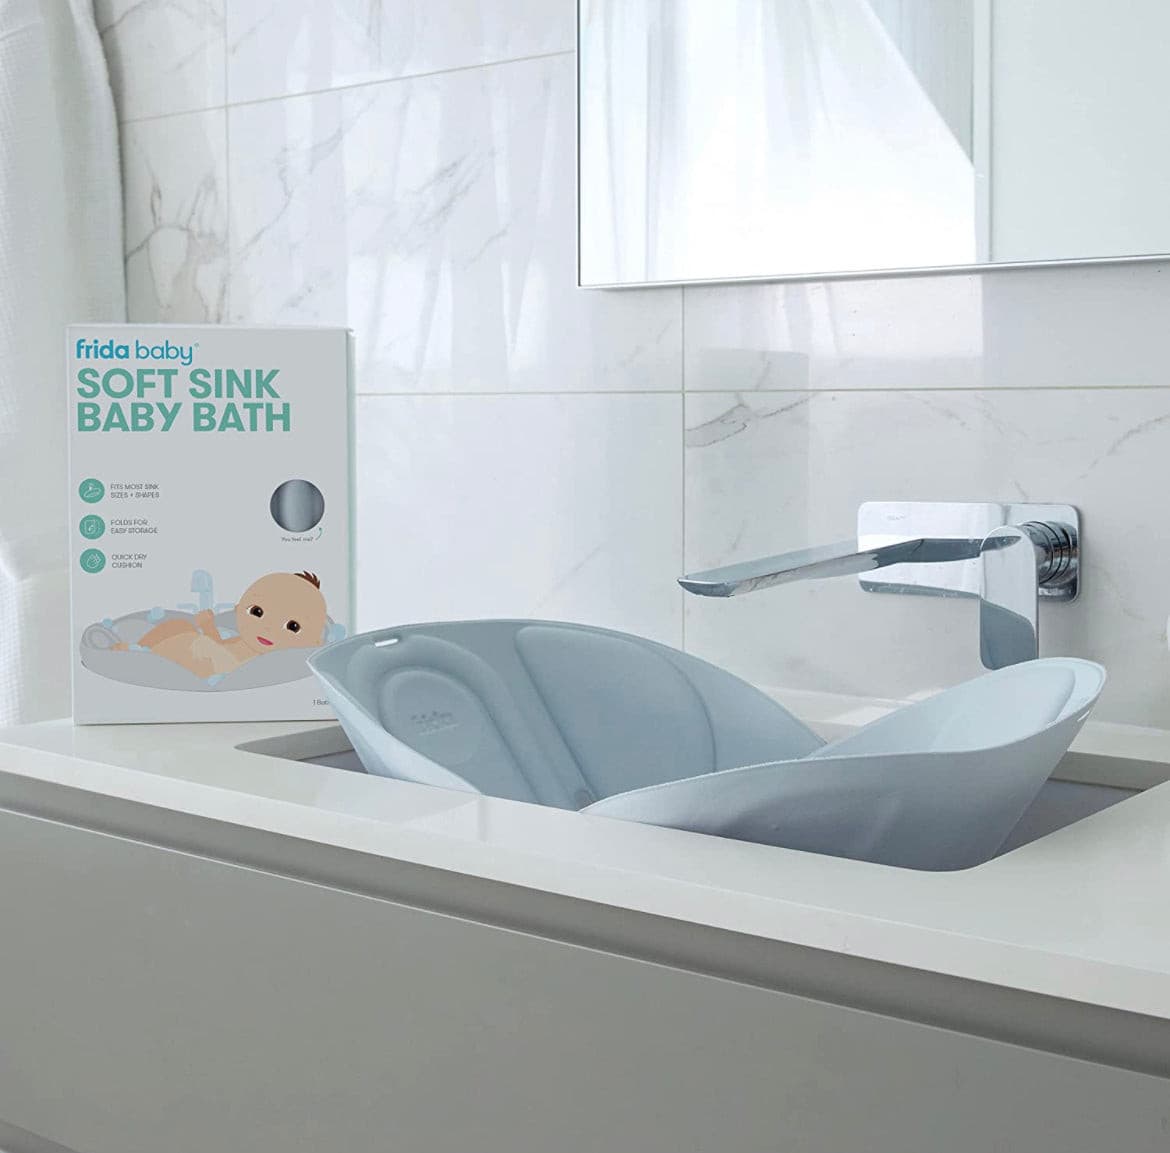 Soft Sink Baby Bath by Frida Baby ,Bath Cushion That Supports Baby's Head.